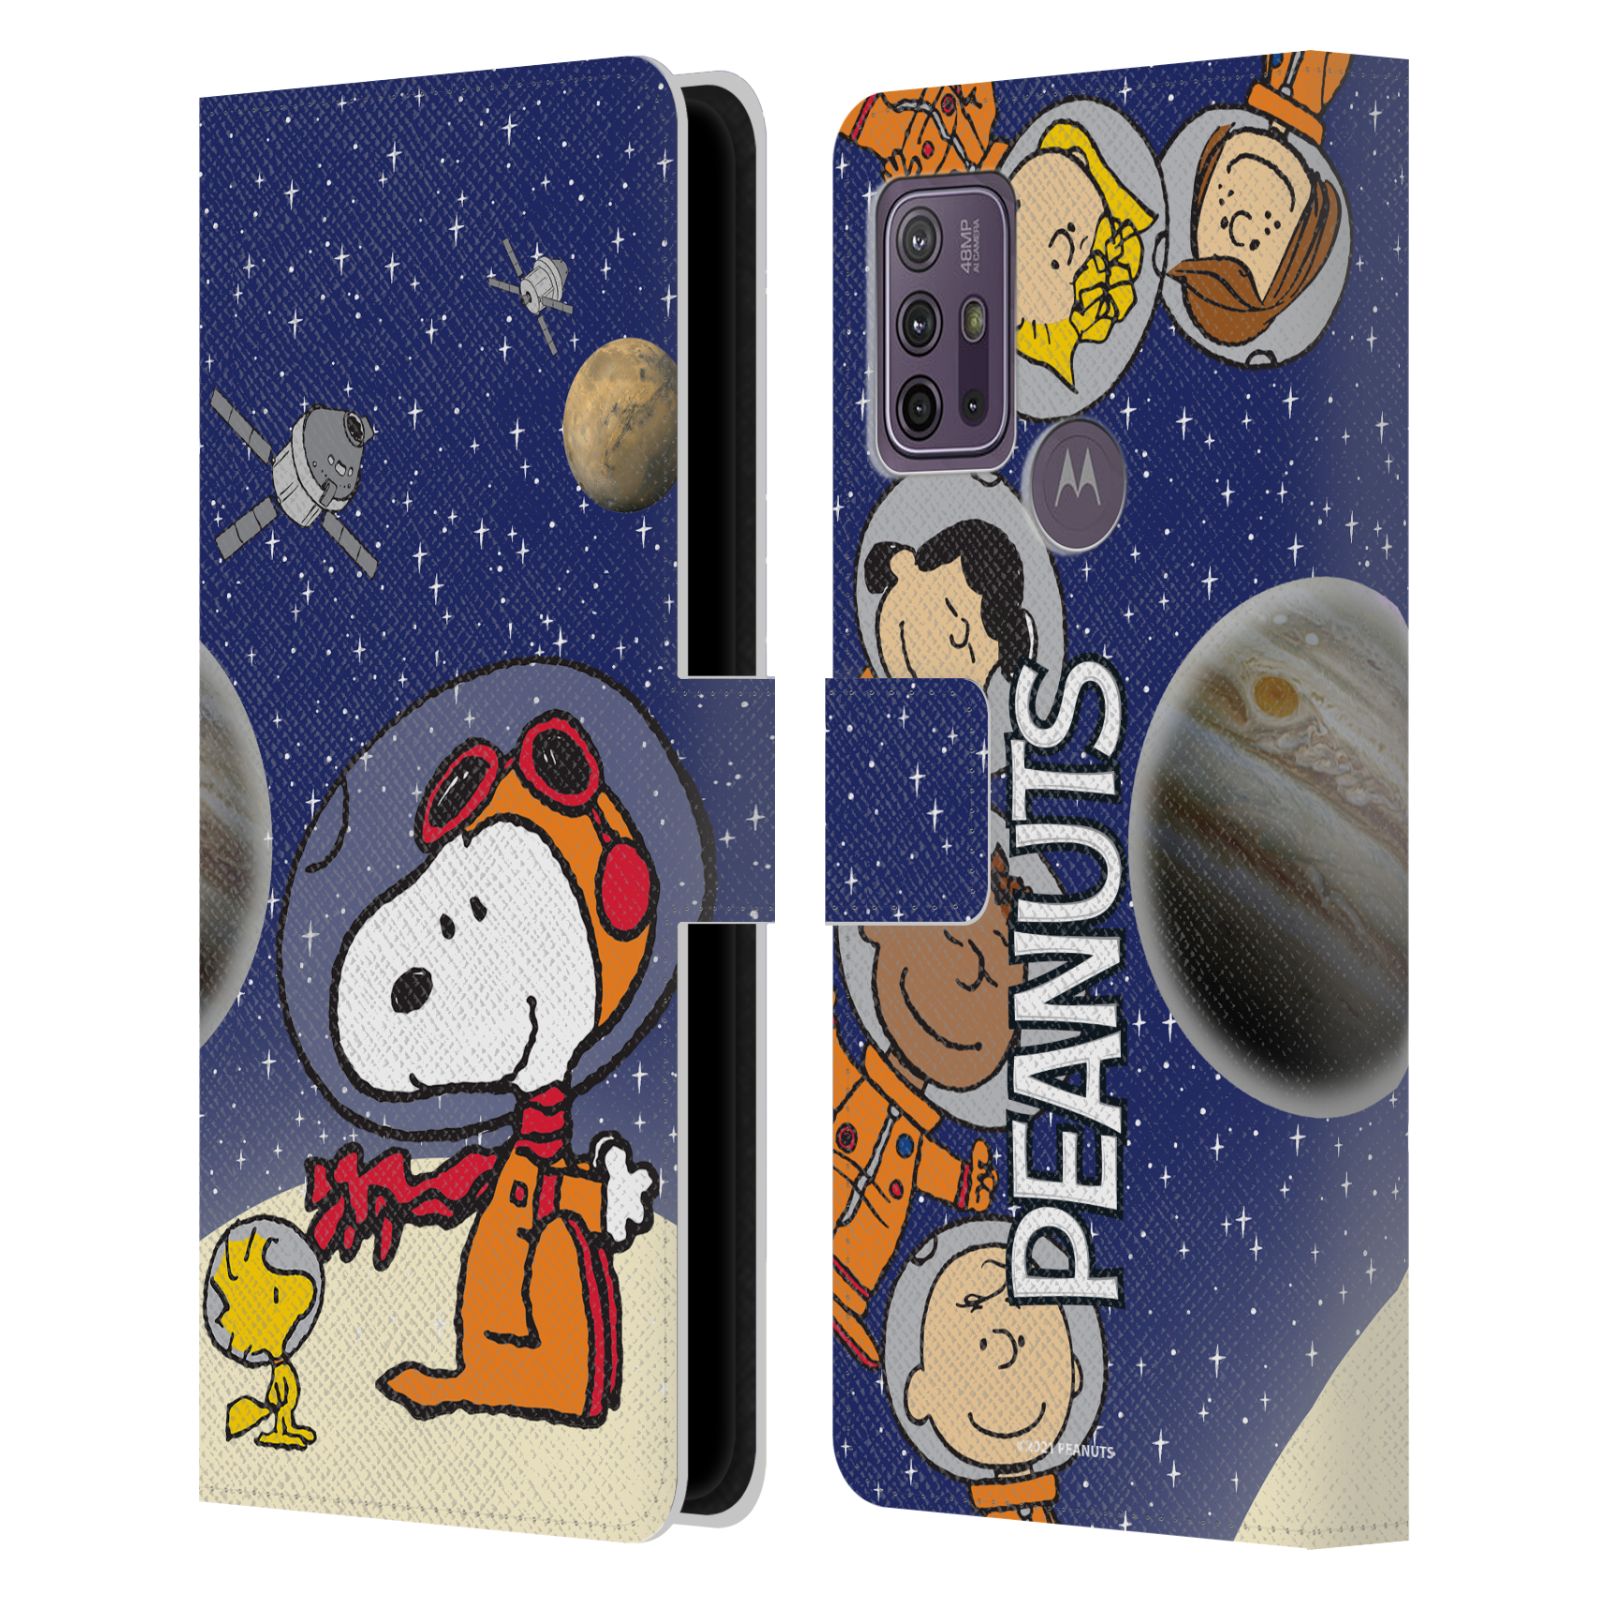 Pouzdro na mobil Motorola Moto G10 / G30 - HEAD CASE - Peanuts Snoopy ve vesmíru 2